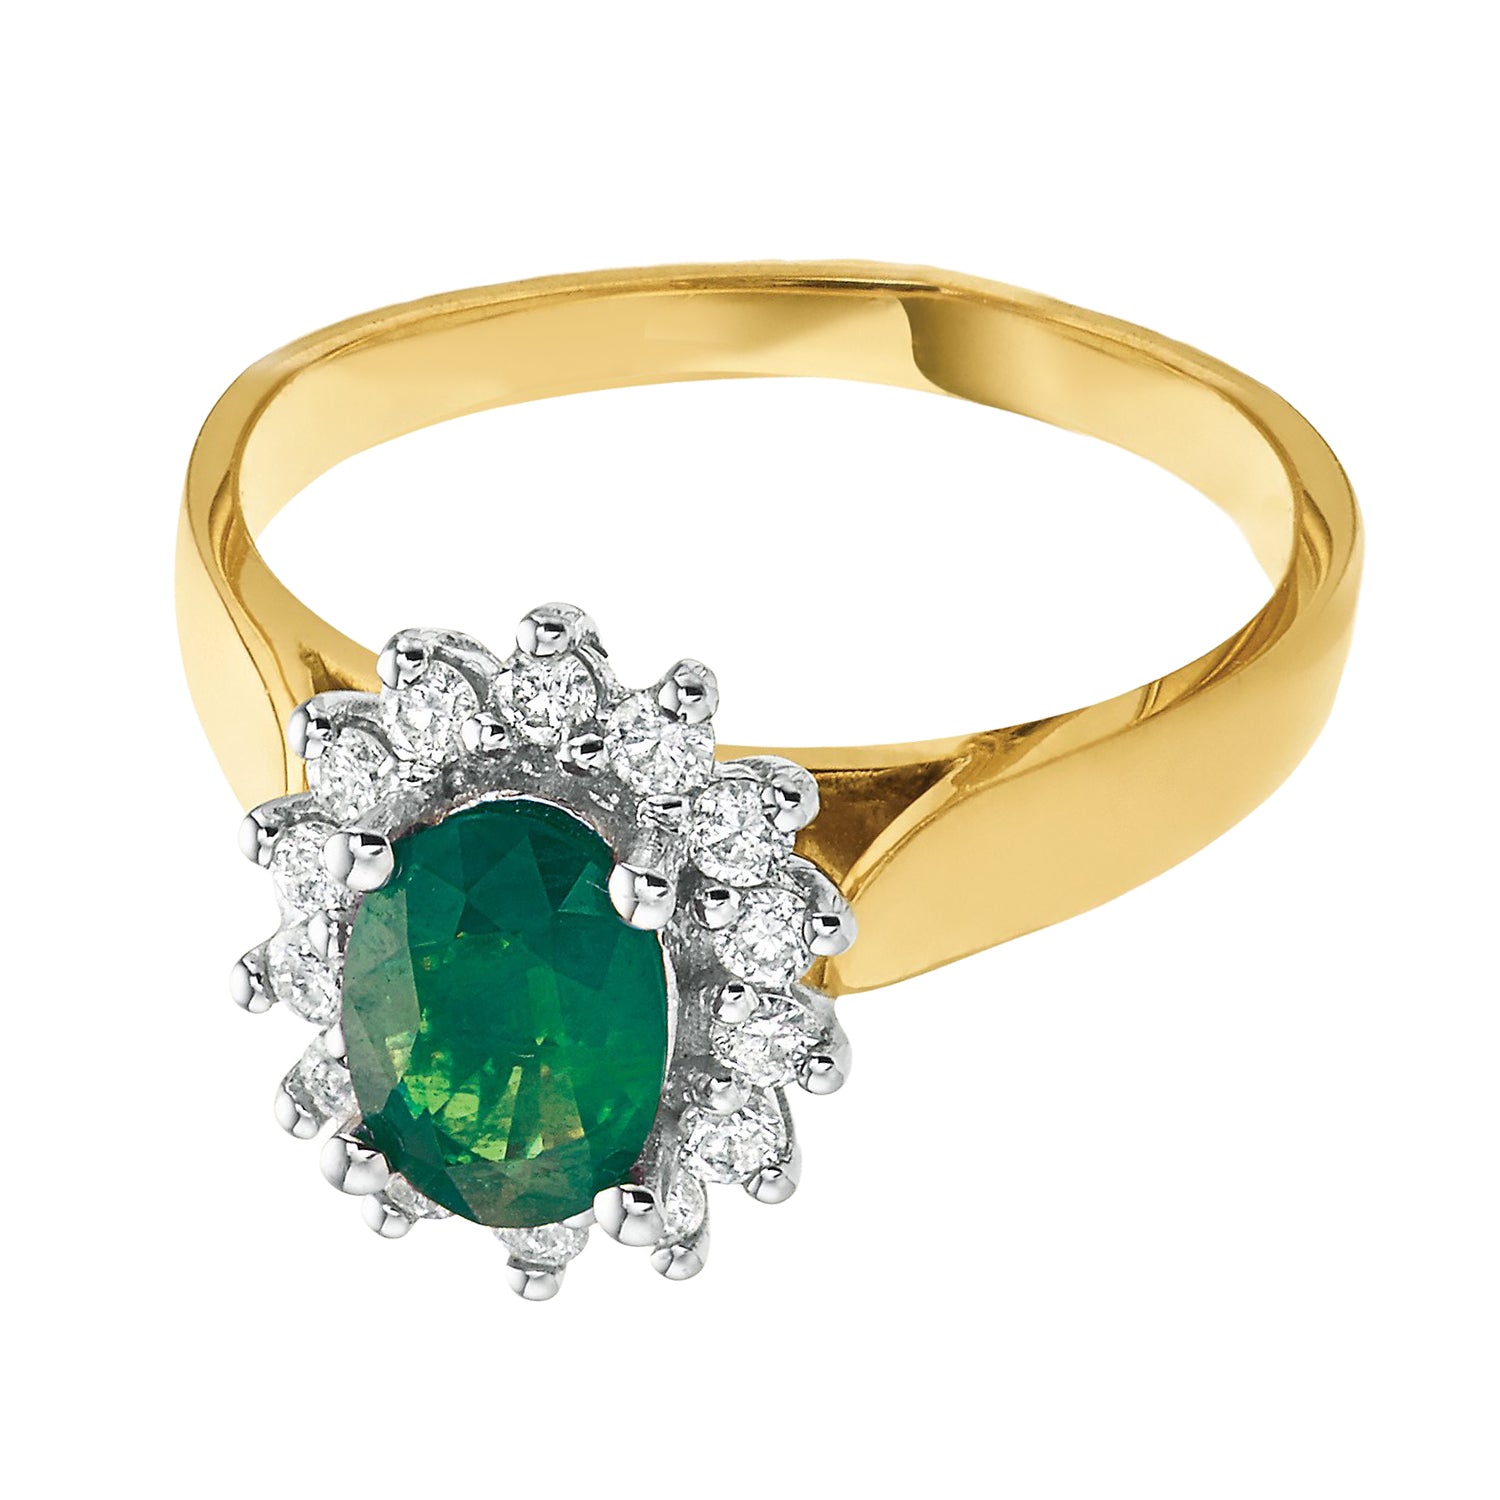 Panna Stone Original Certified Panna Stone Emerald Ring Panchdhatu  Adjustable Women Men Ring With Lab Certificate